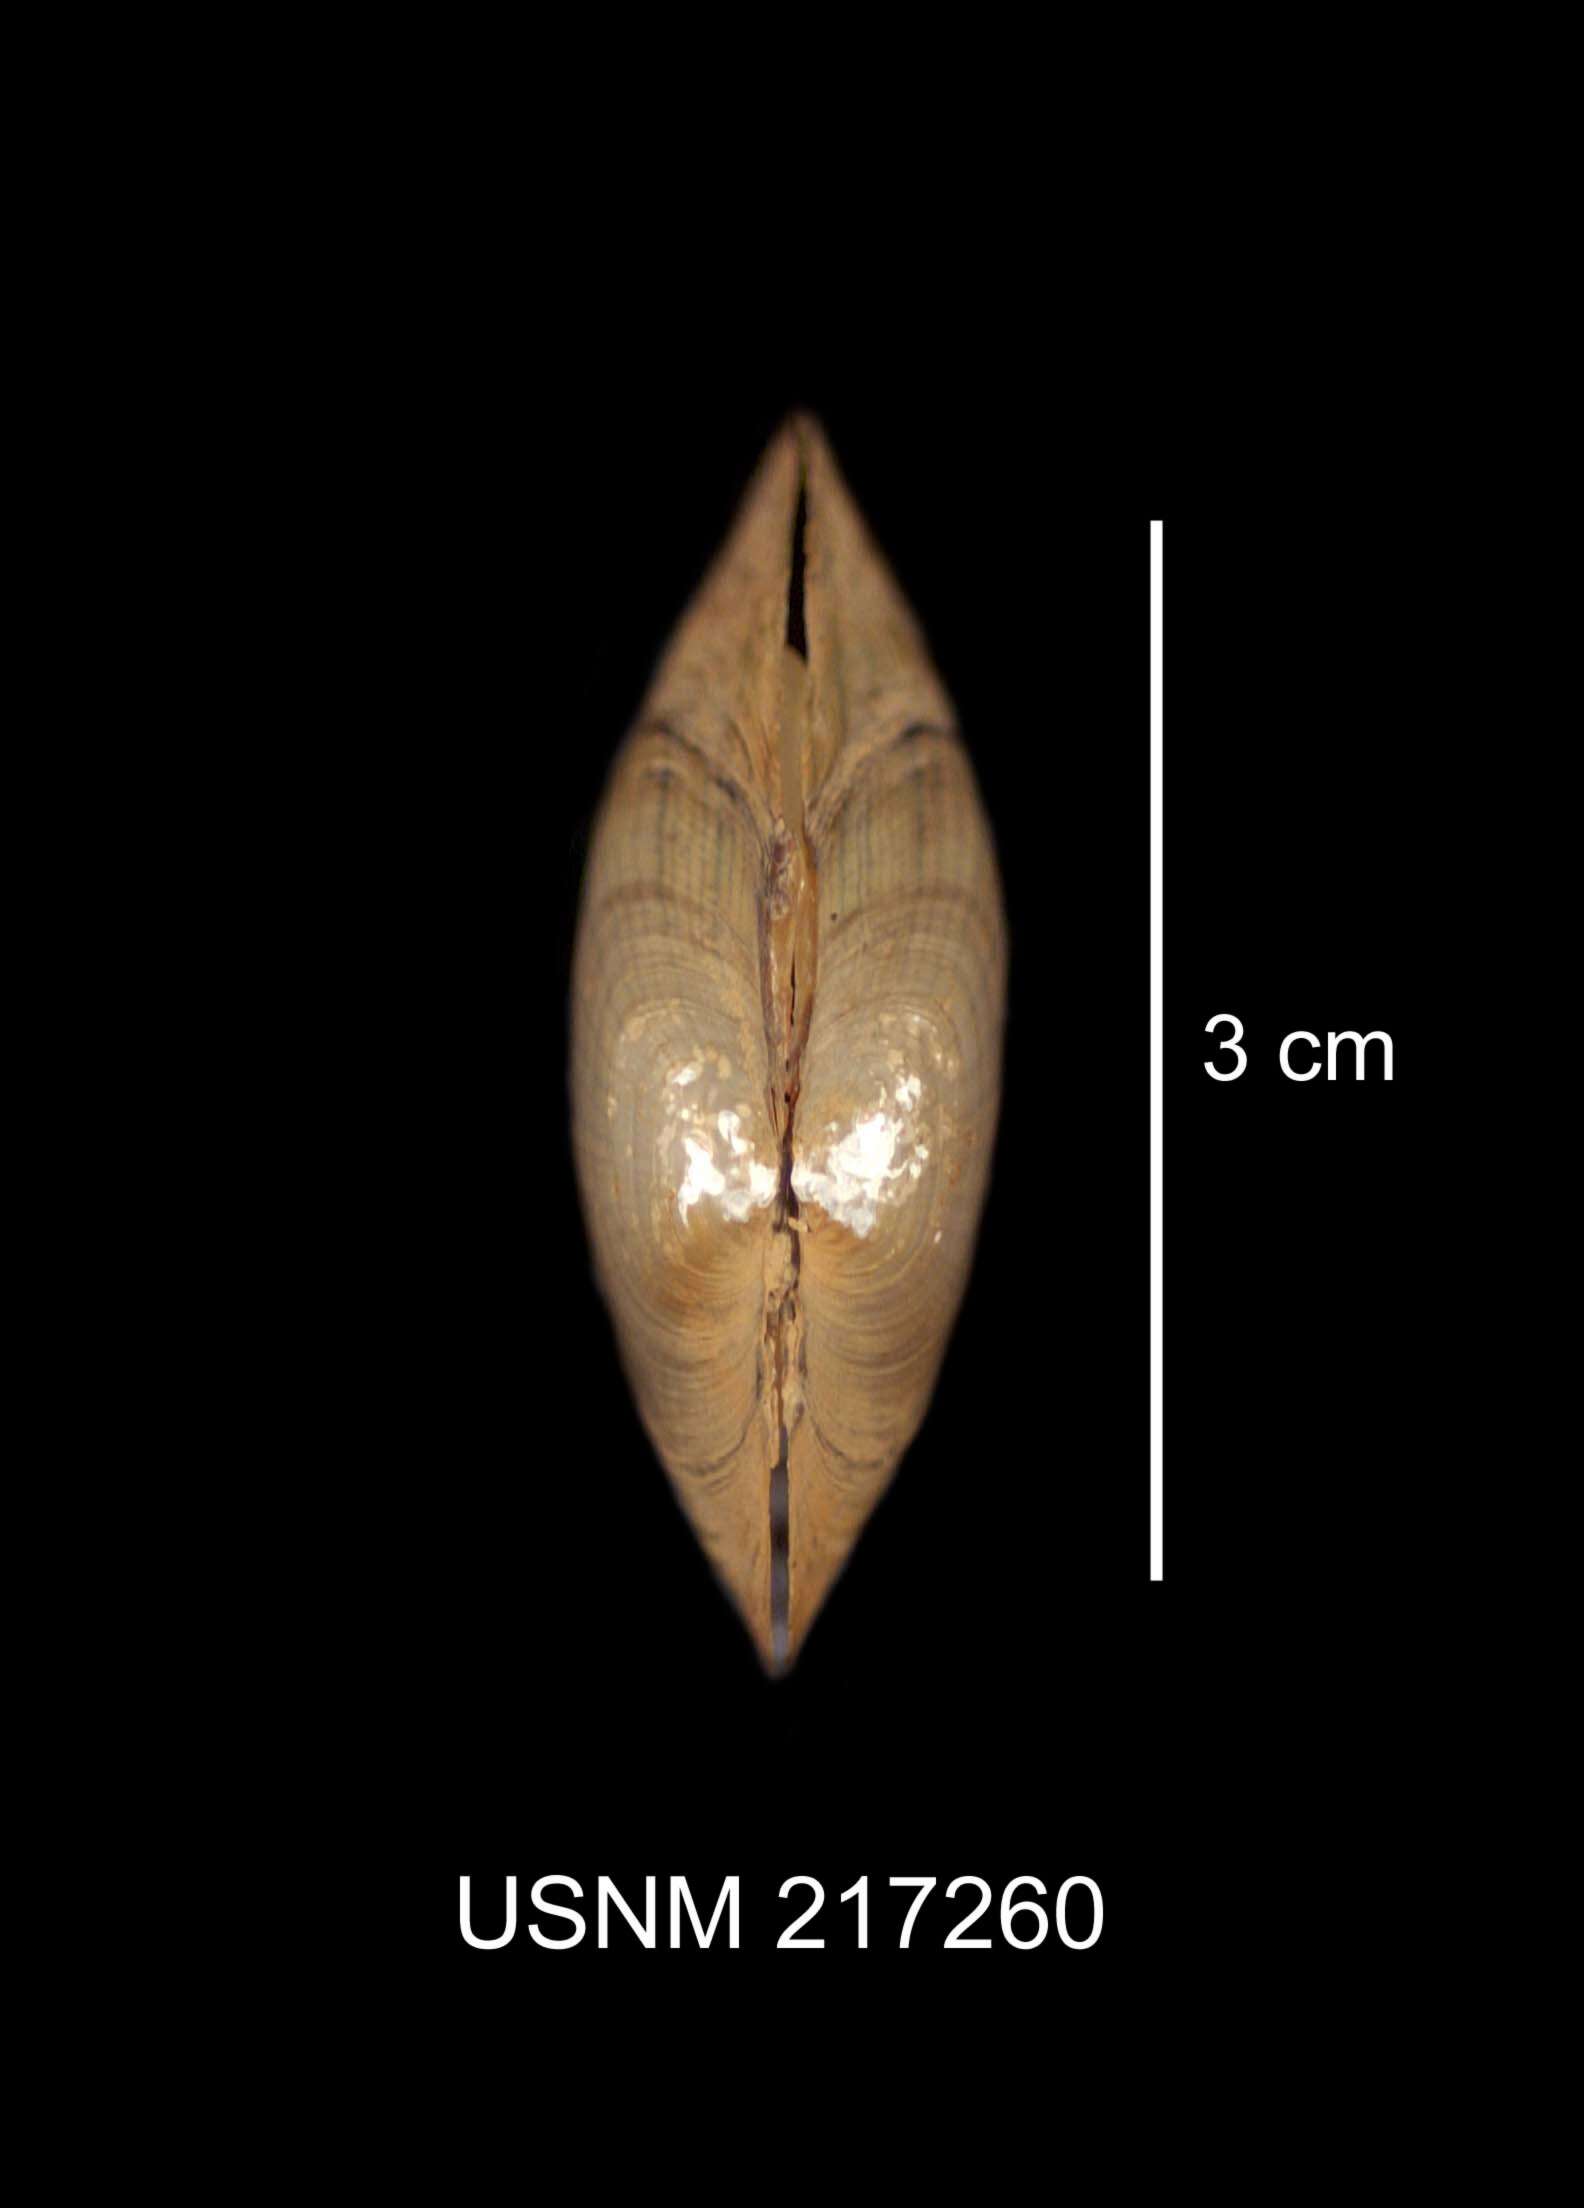 Image de Lampsilis radiata (Gmelin 1791)